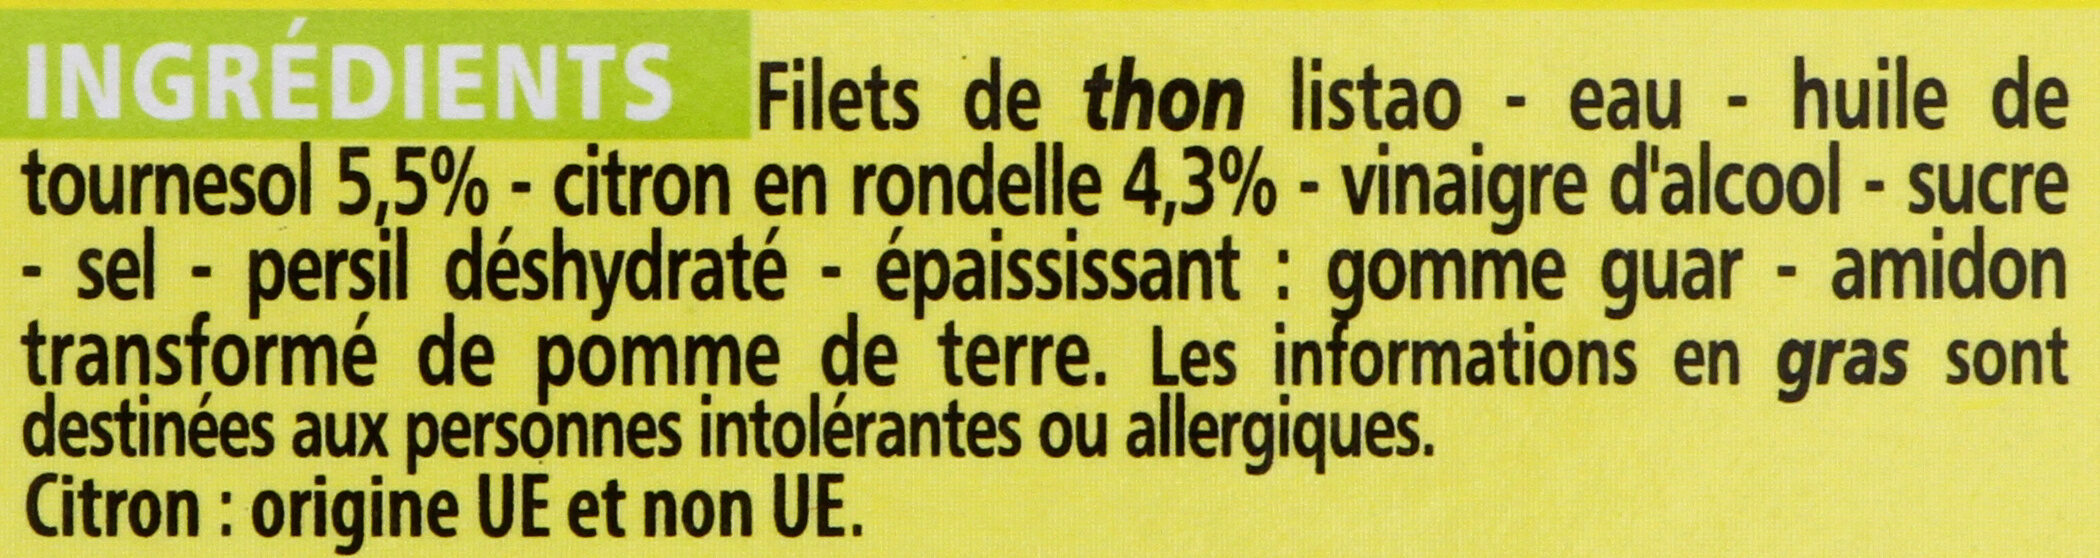 Filets de thon au citron - Ingredientes - fr